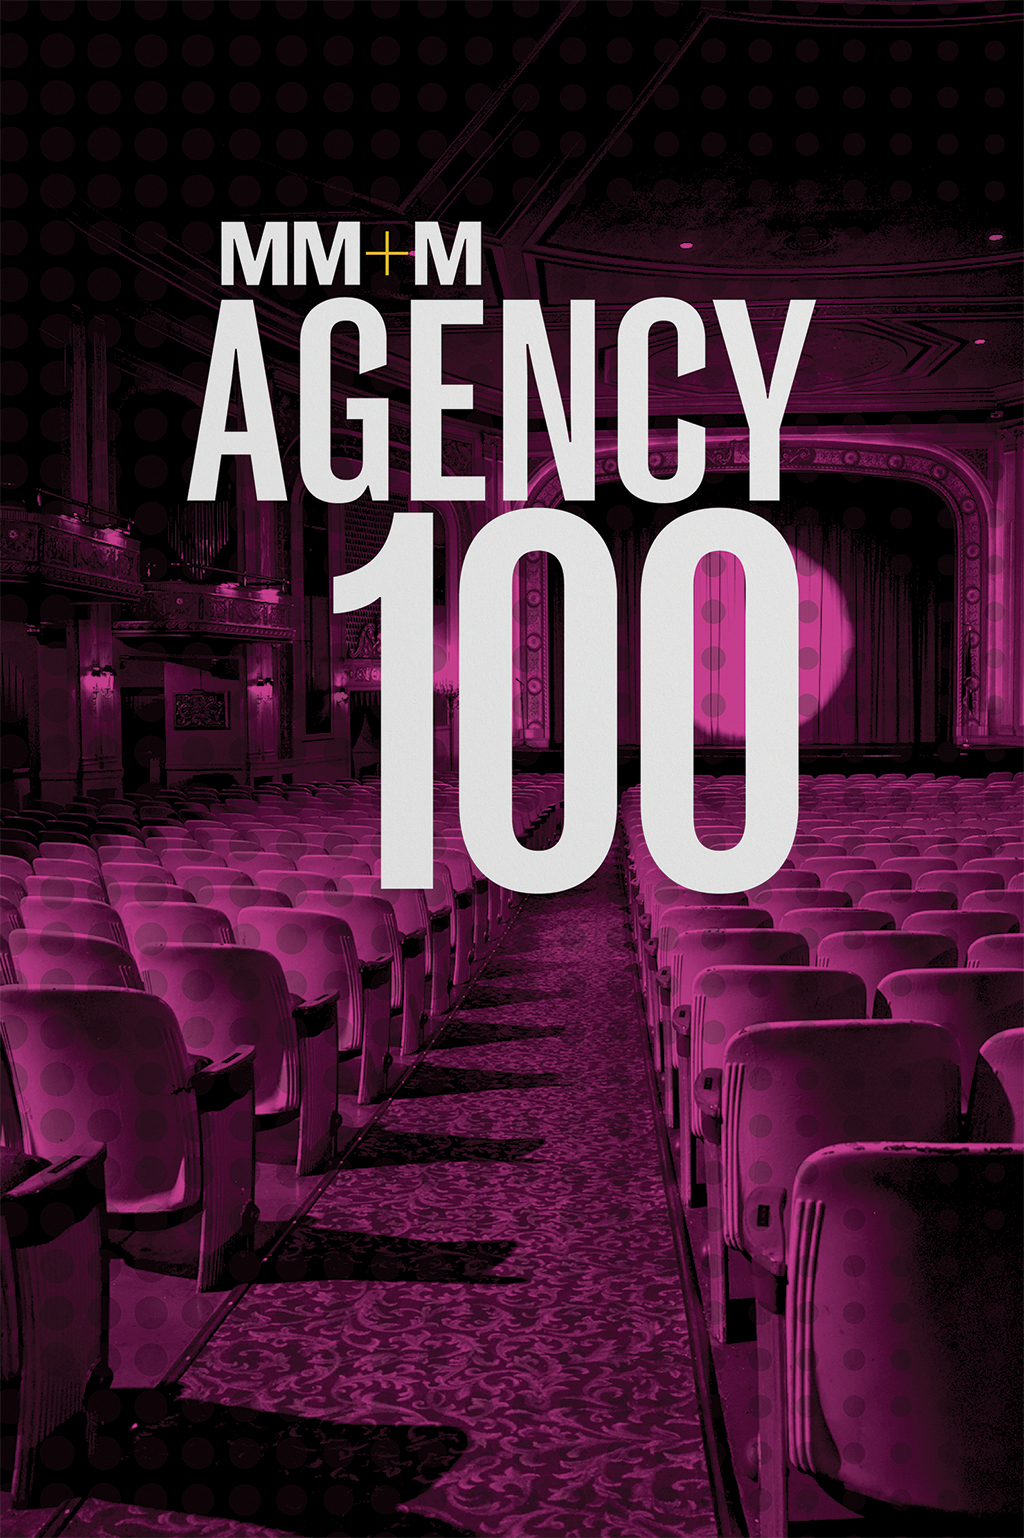 MM+M Agency 100 : Deloitte Digital 